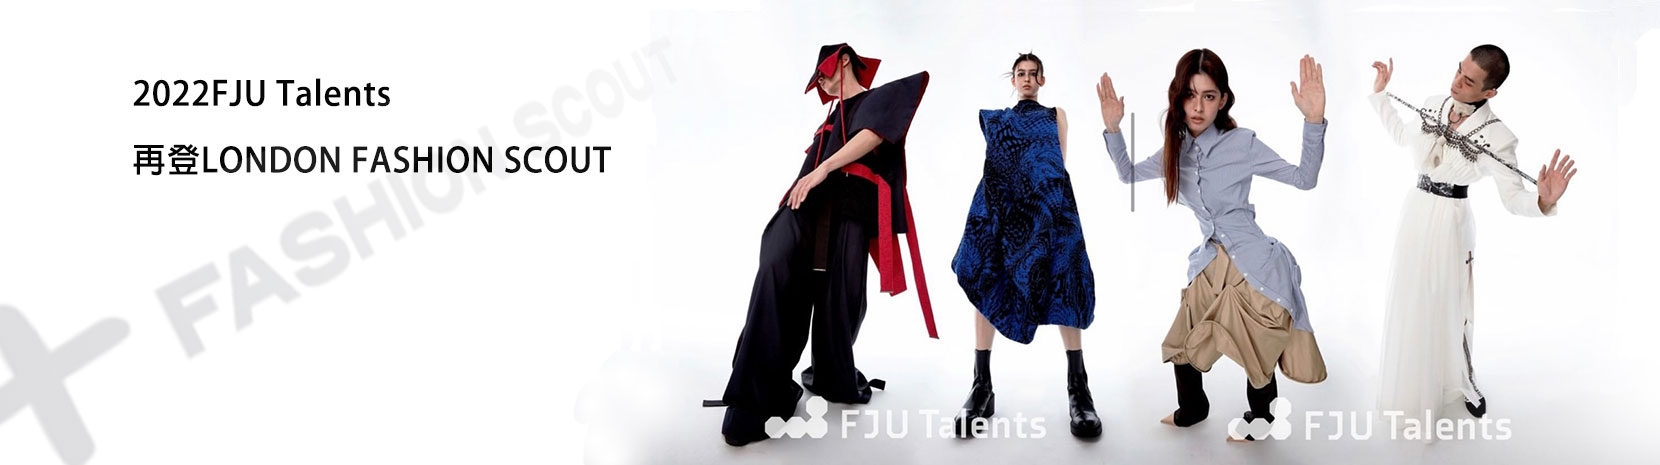 織品服裝學院FJU Talents團隊參加倫敦時裝周Fashion Scout ! 展現台灣新銳設計實力